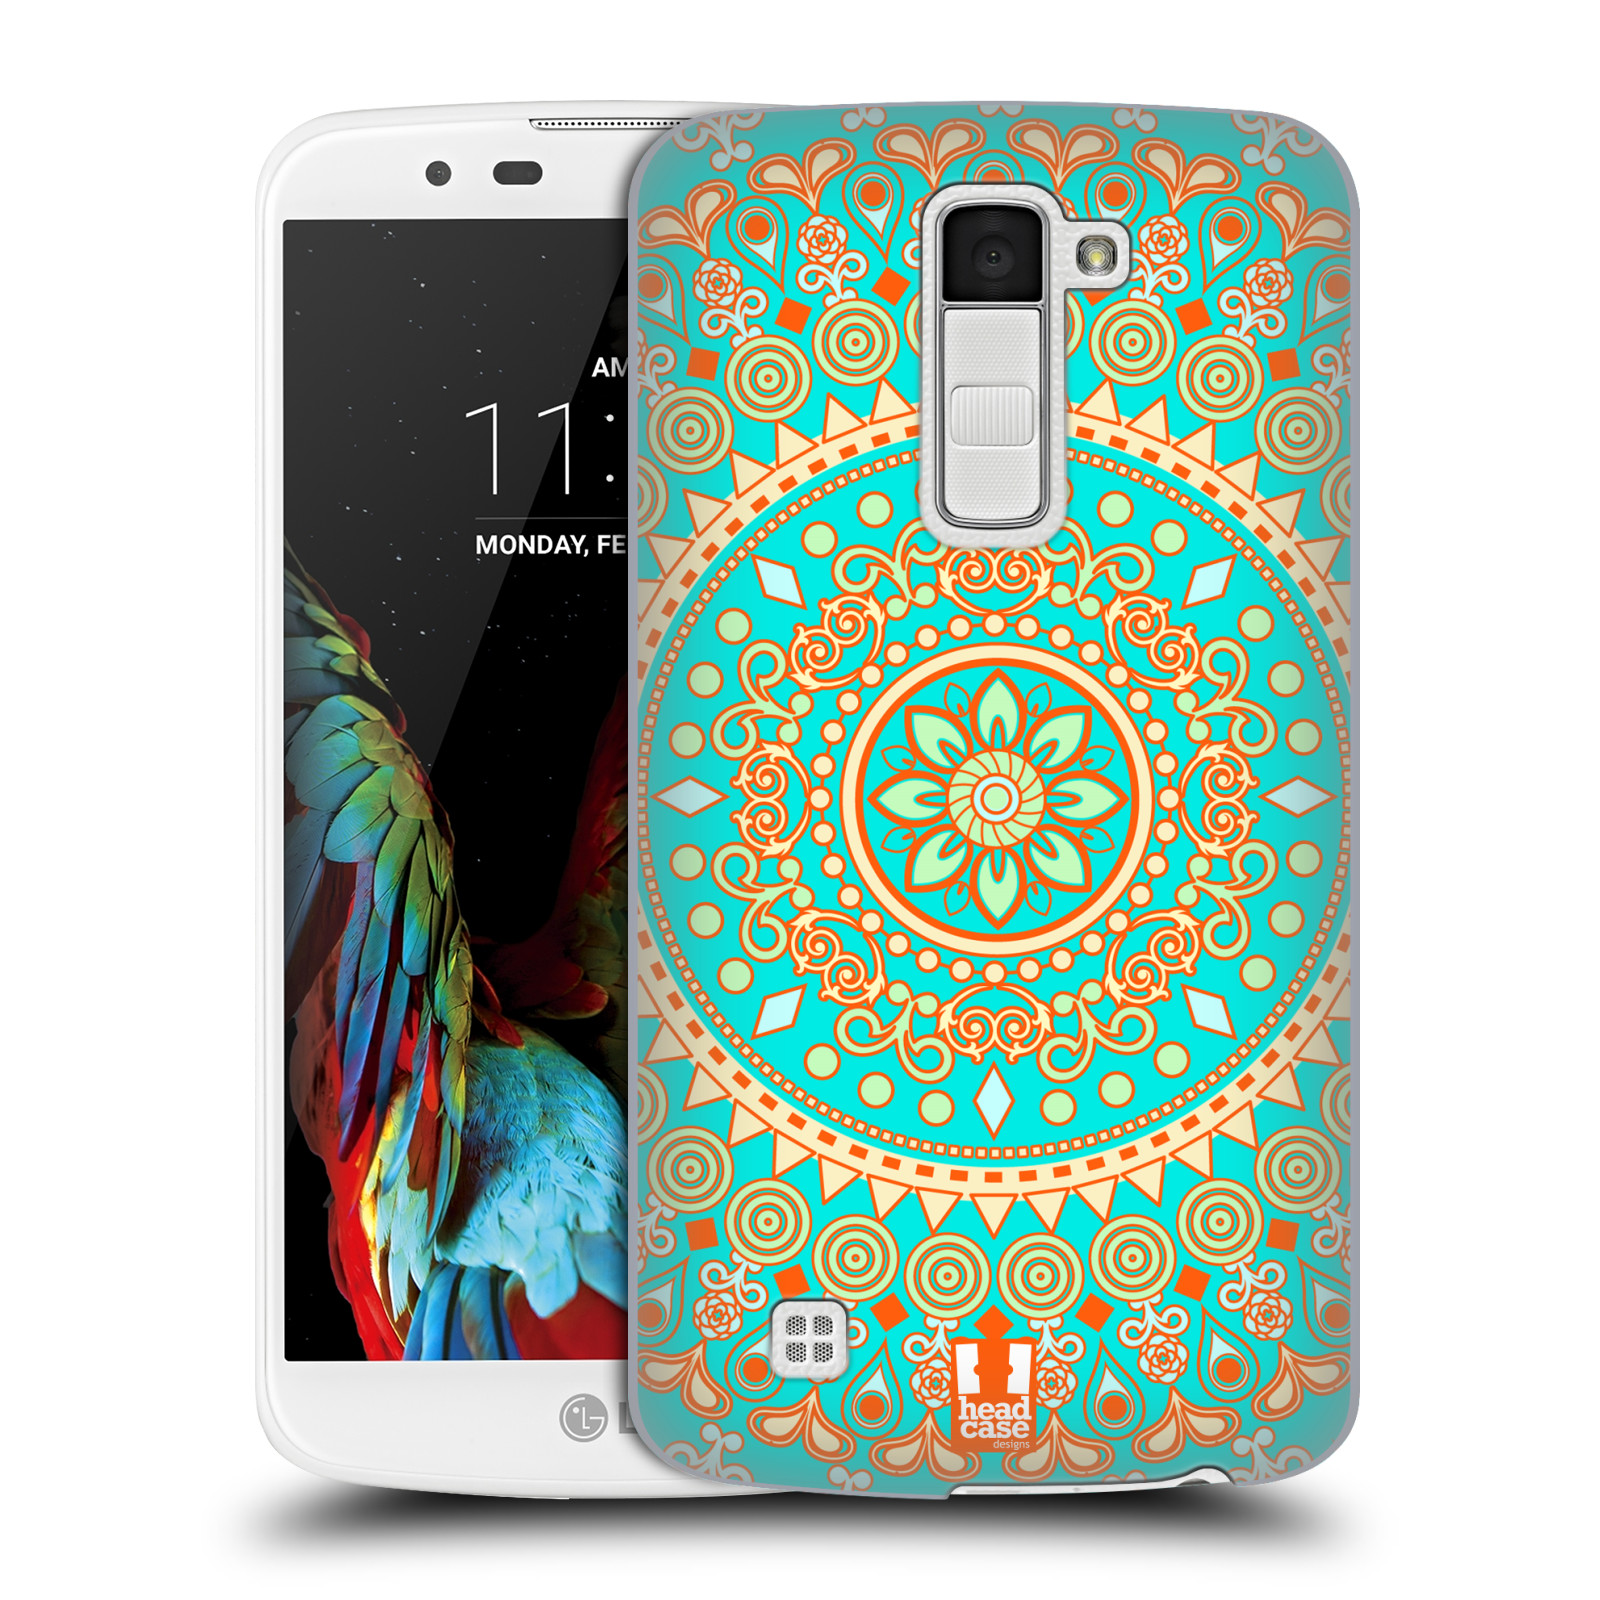 HEAD CASE plastový obal na mobil LG K10 vzor Indie Mandala slunce barevný motiv TYRKYSOVÁ, ZELENÁ